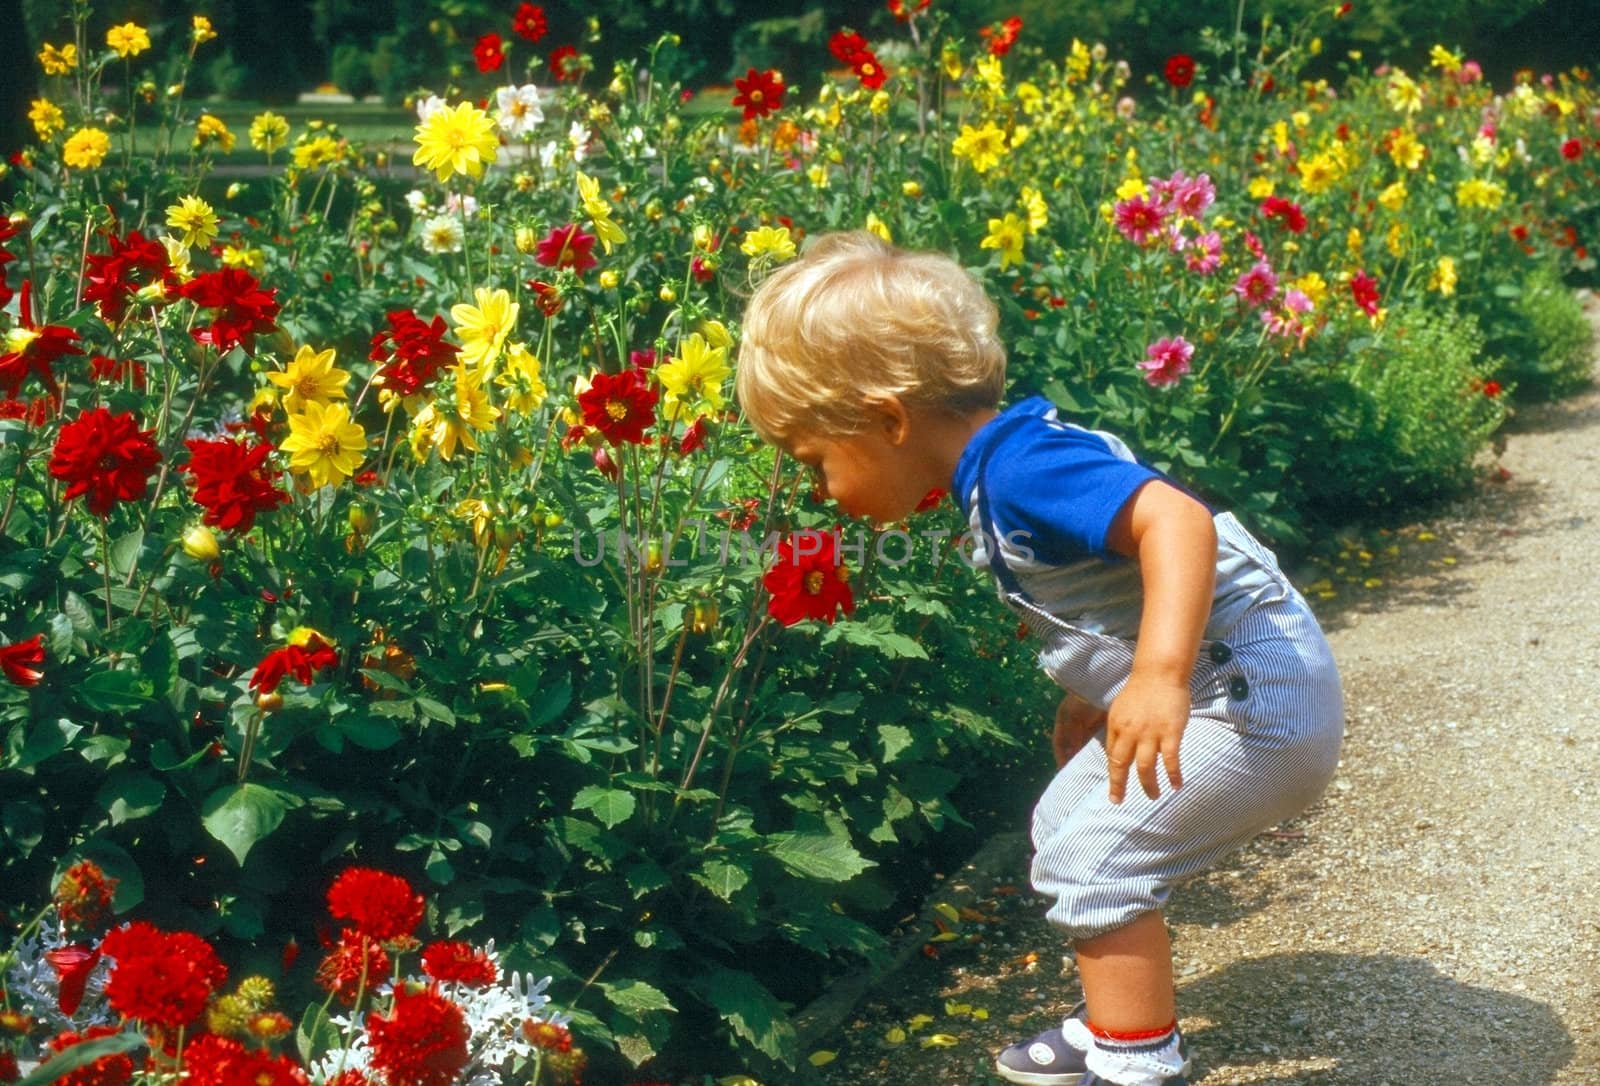 Little boy in garden with flowers